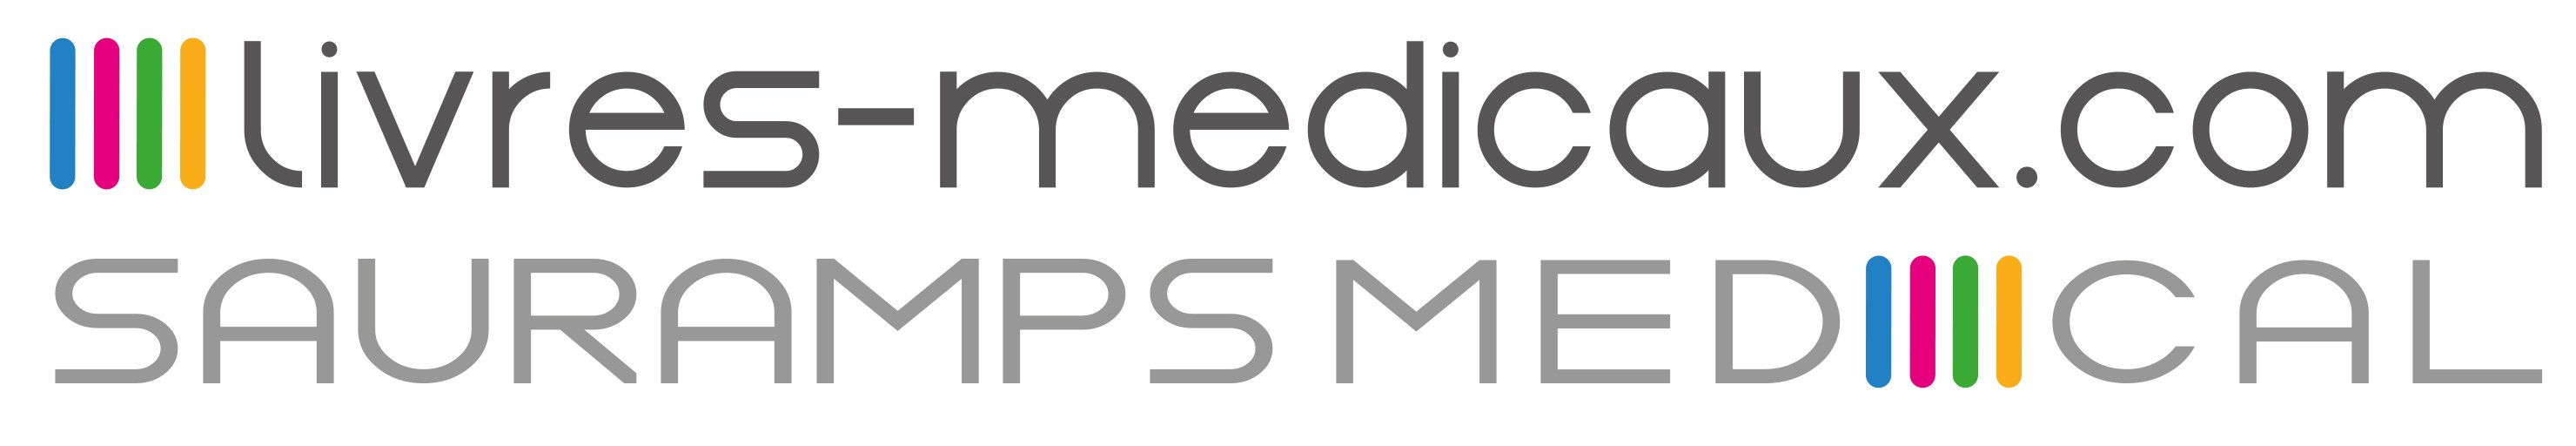 Logo Livres-médicaux.com